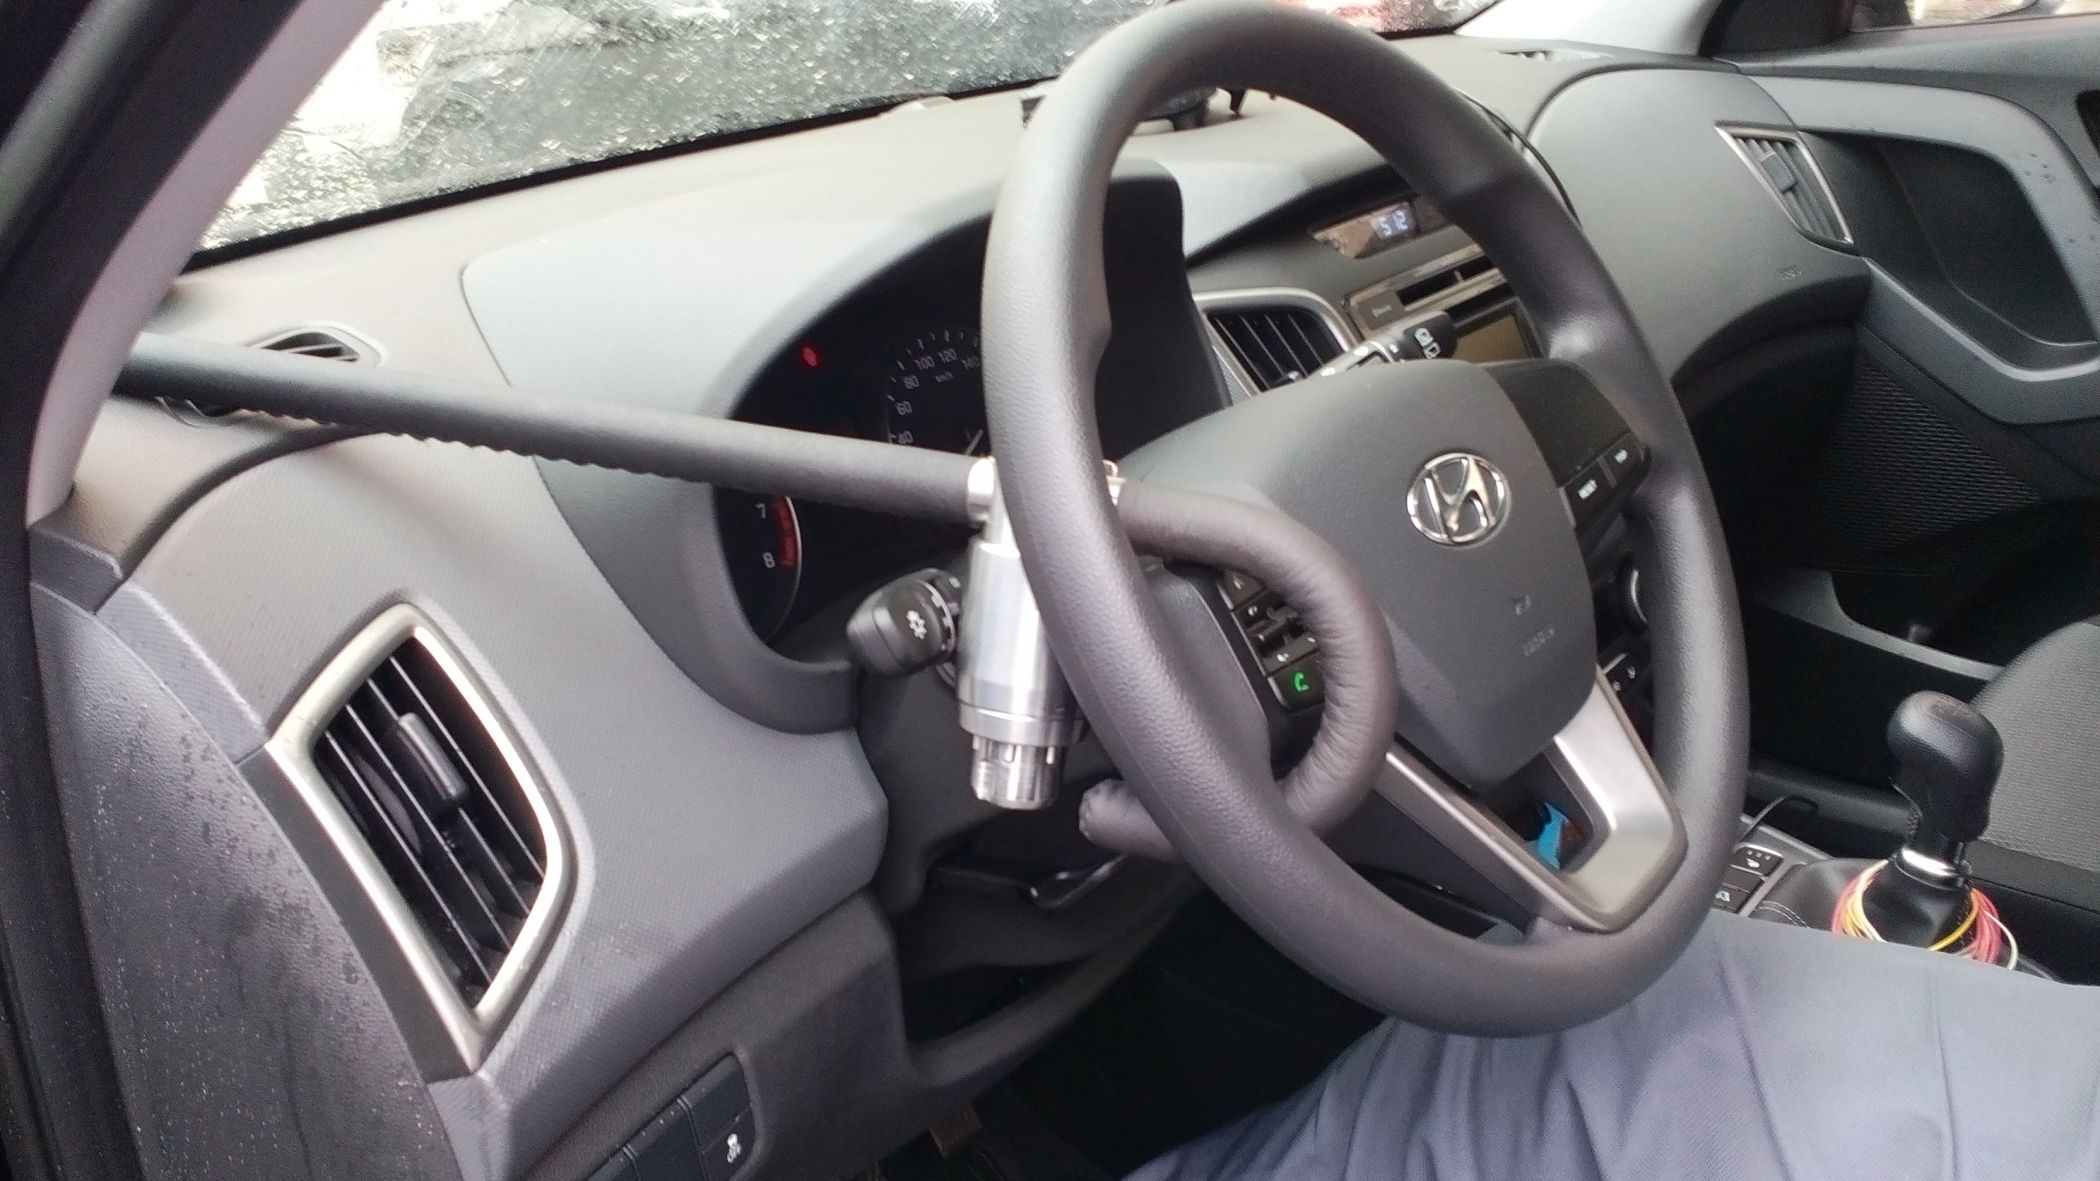 Блокиратор руля Питон установленный на автомобиле Hyundai Creta 2016-